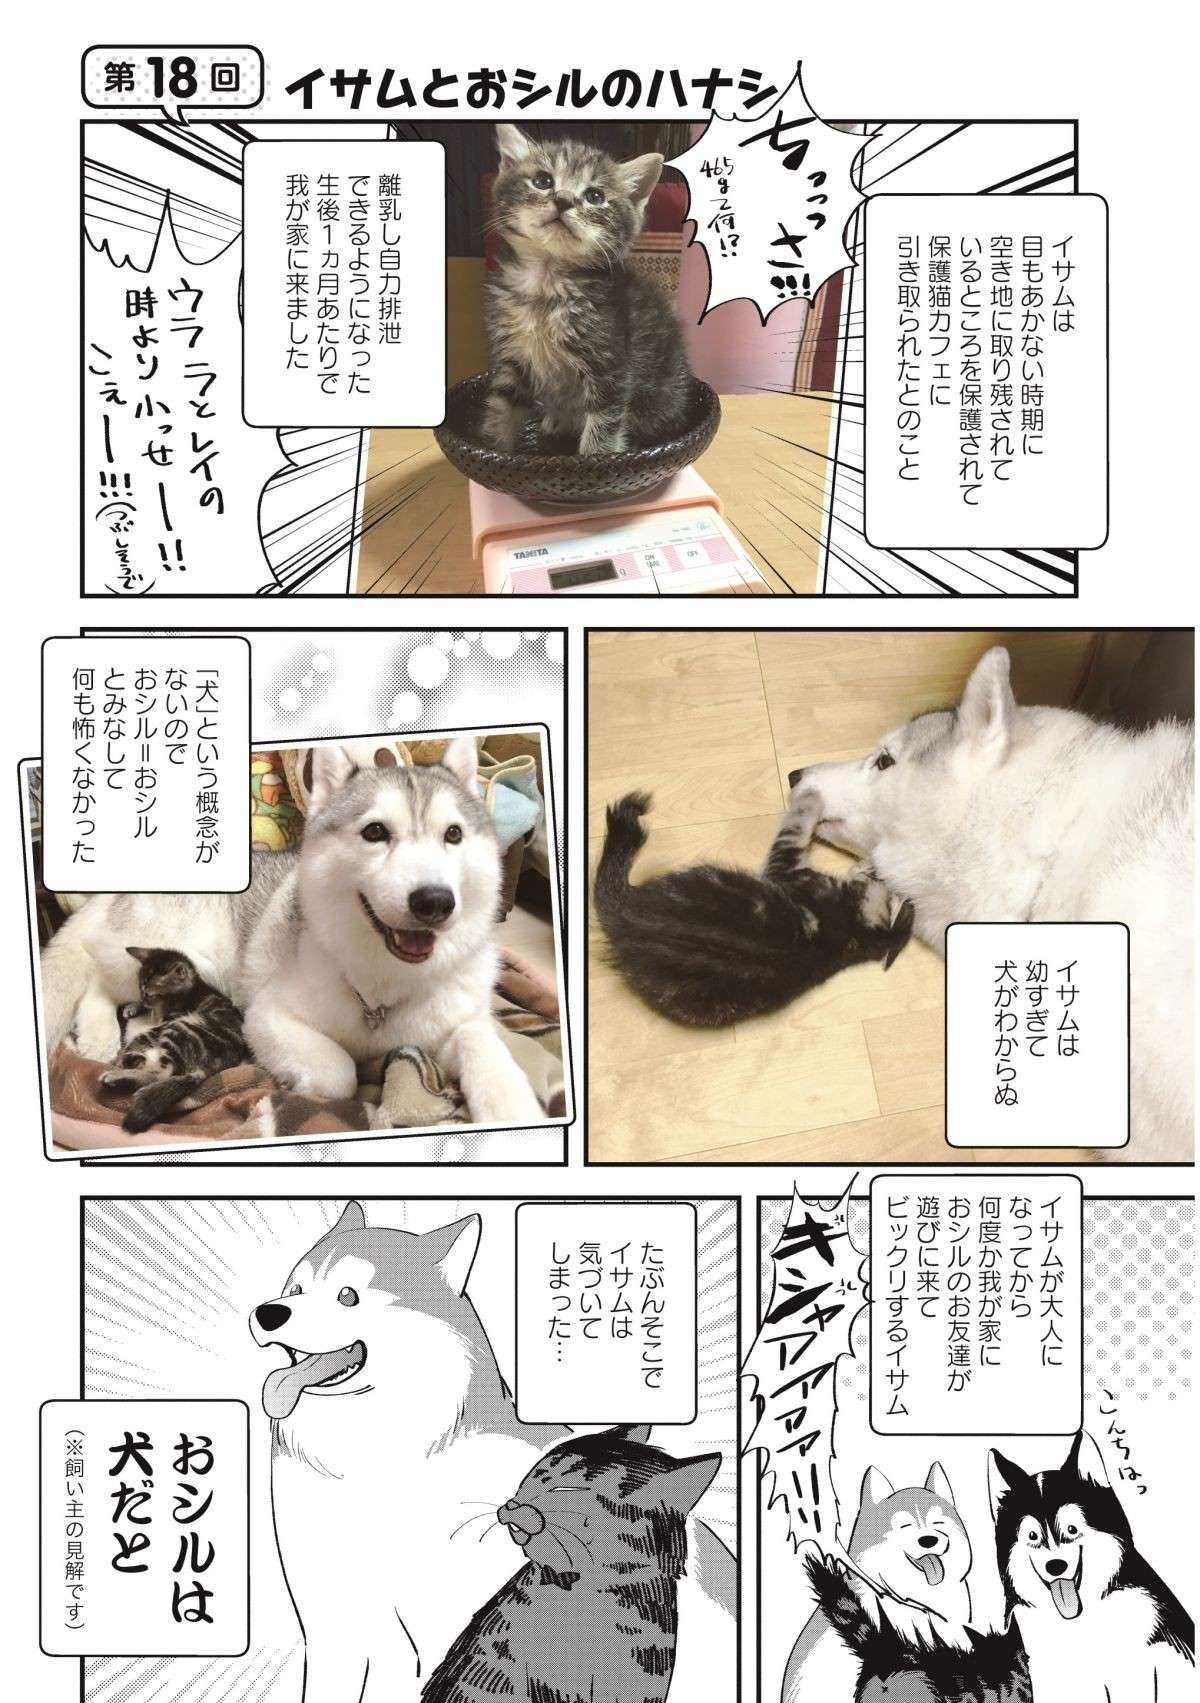 大型犬と一緒に育った子猫。ある日「犬だ」と気づいたようで...／猫とハスキーとハマジ2 neko_husky_hamaji2.3-1.jpg